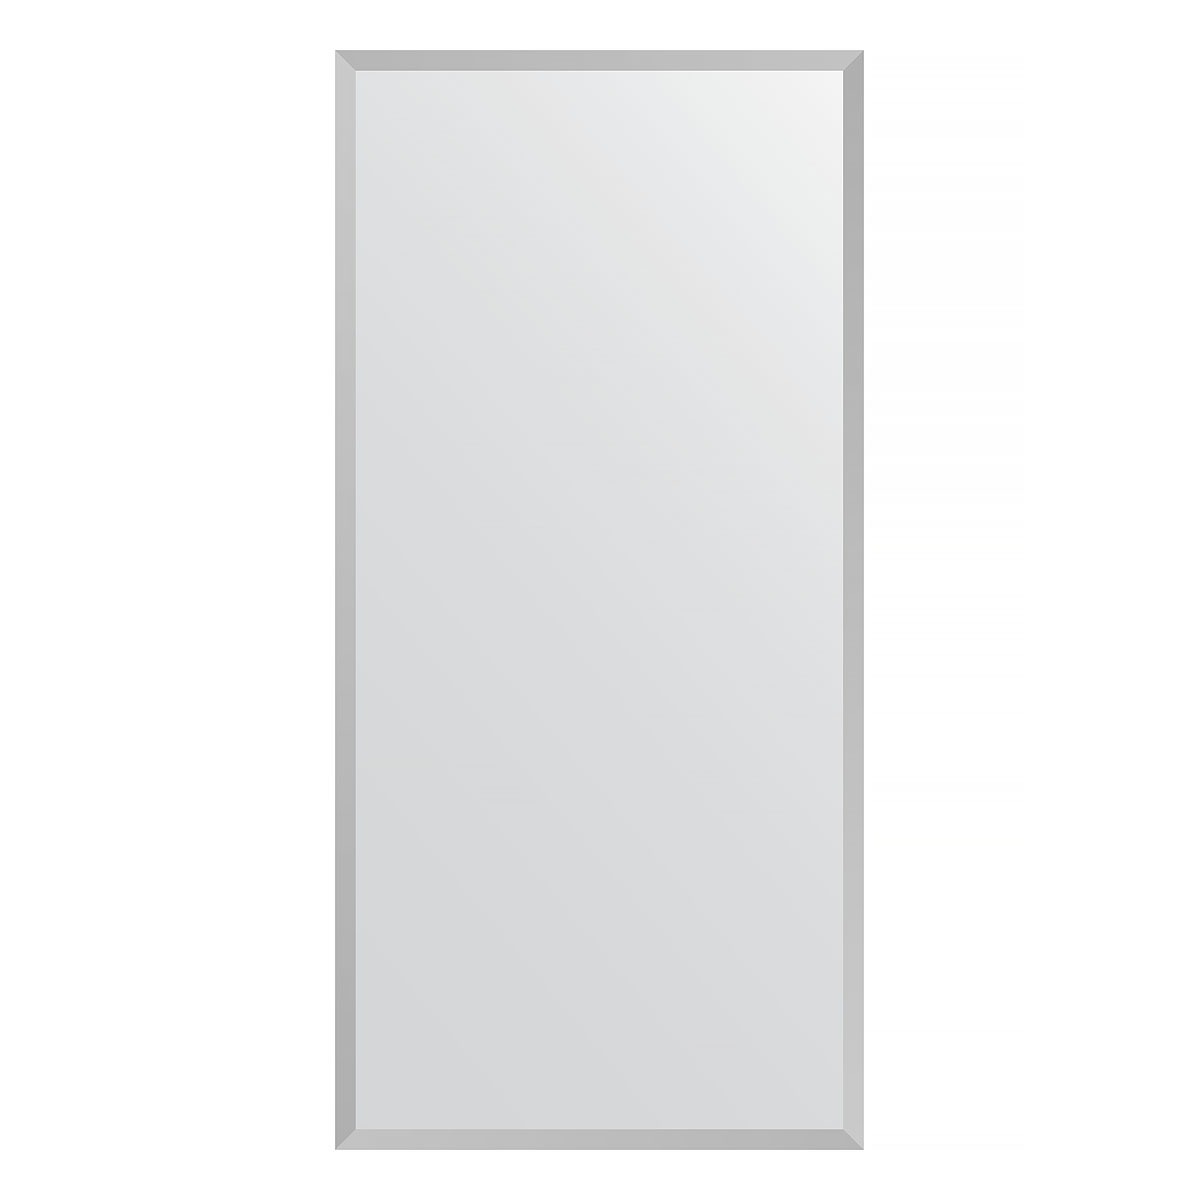 Зеркало в багетной раме Evoform хром 18 мм 46х96 см зеркало в багетной раме evoform хром 18 мм 46х96 см